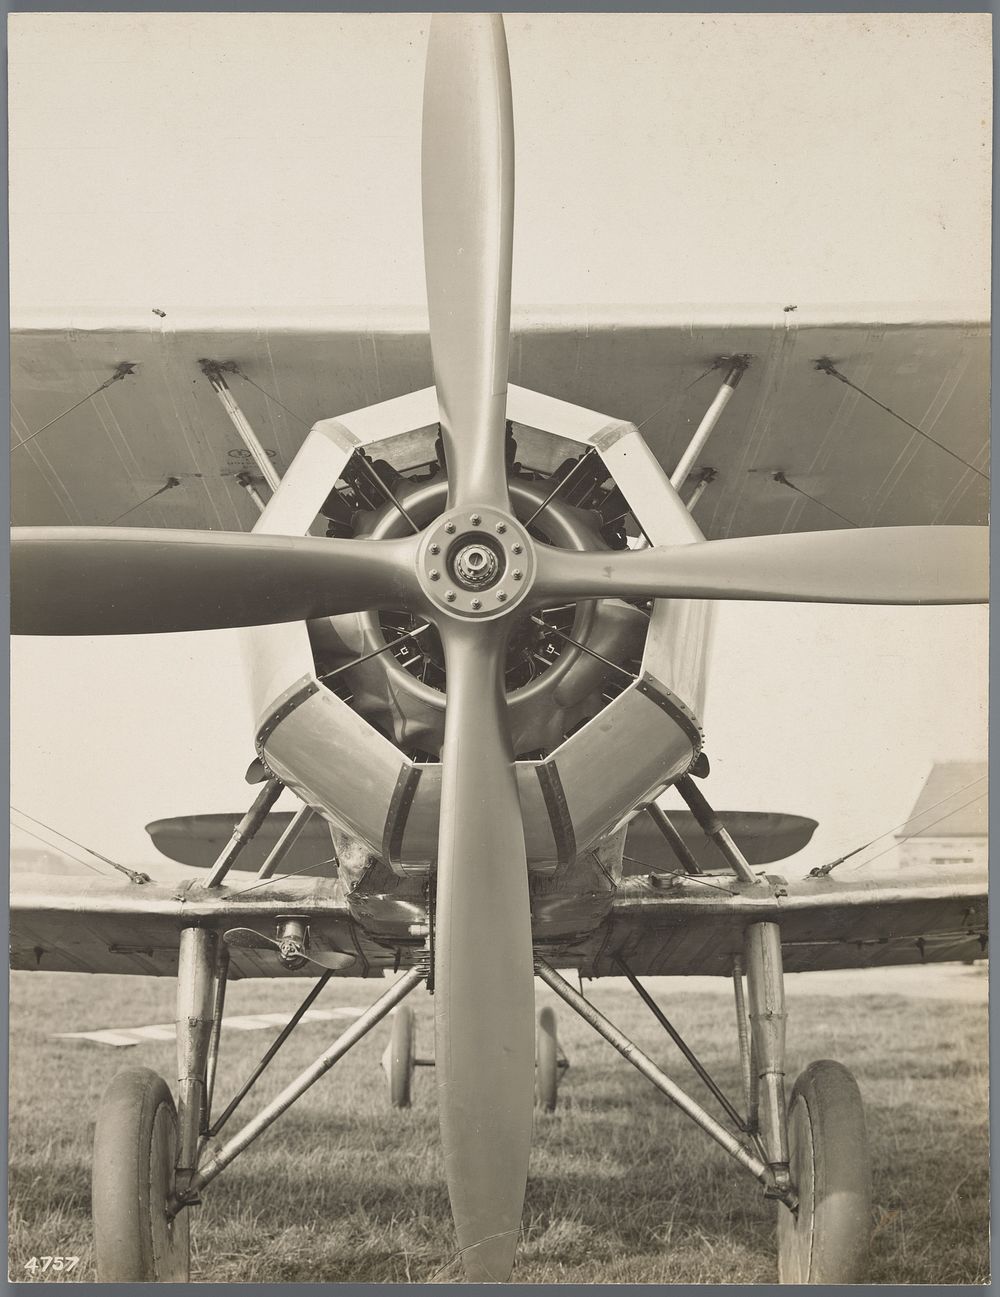 Vliegtuig van voren gezien (c. 1930 - c. 1940) by anonymous